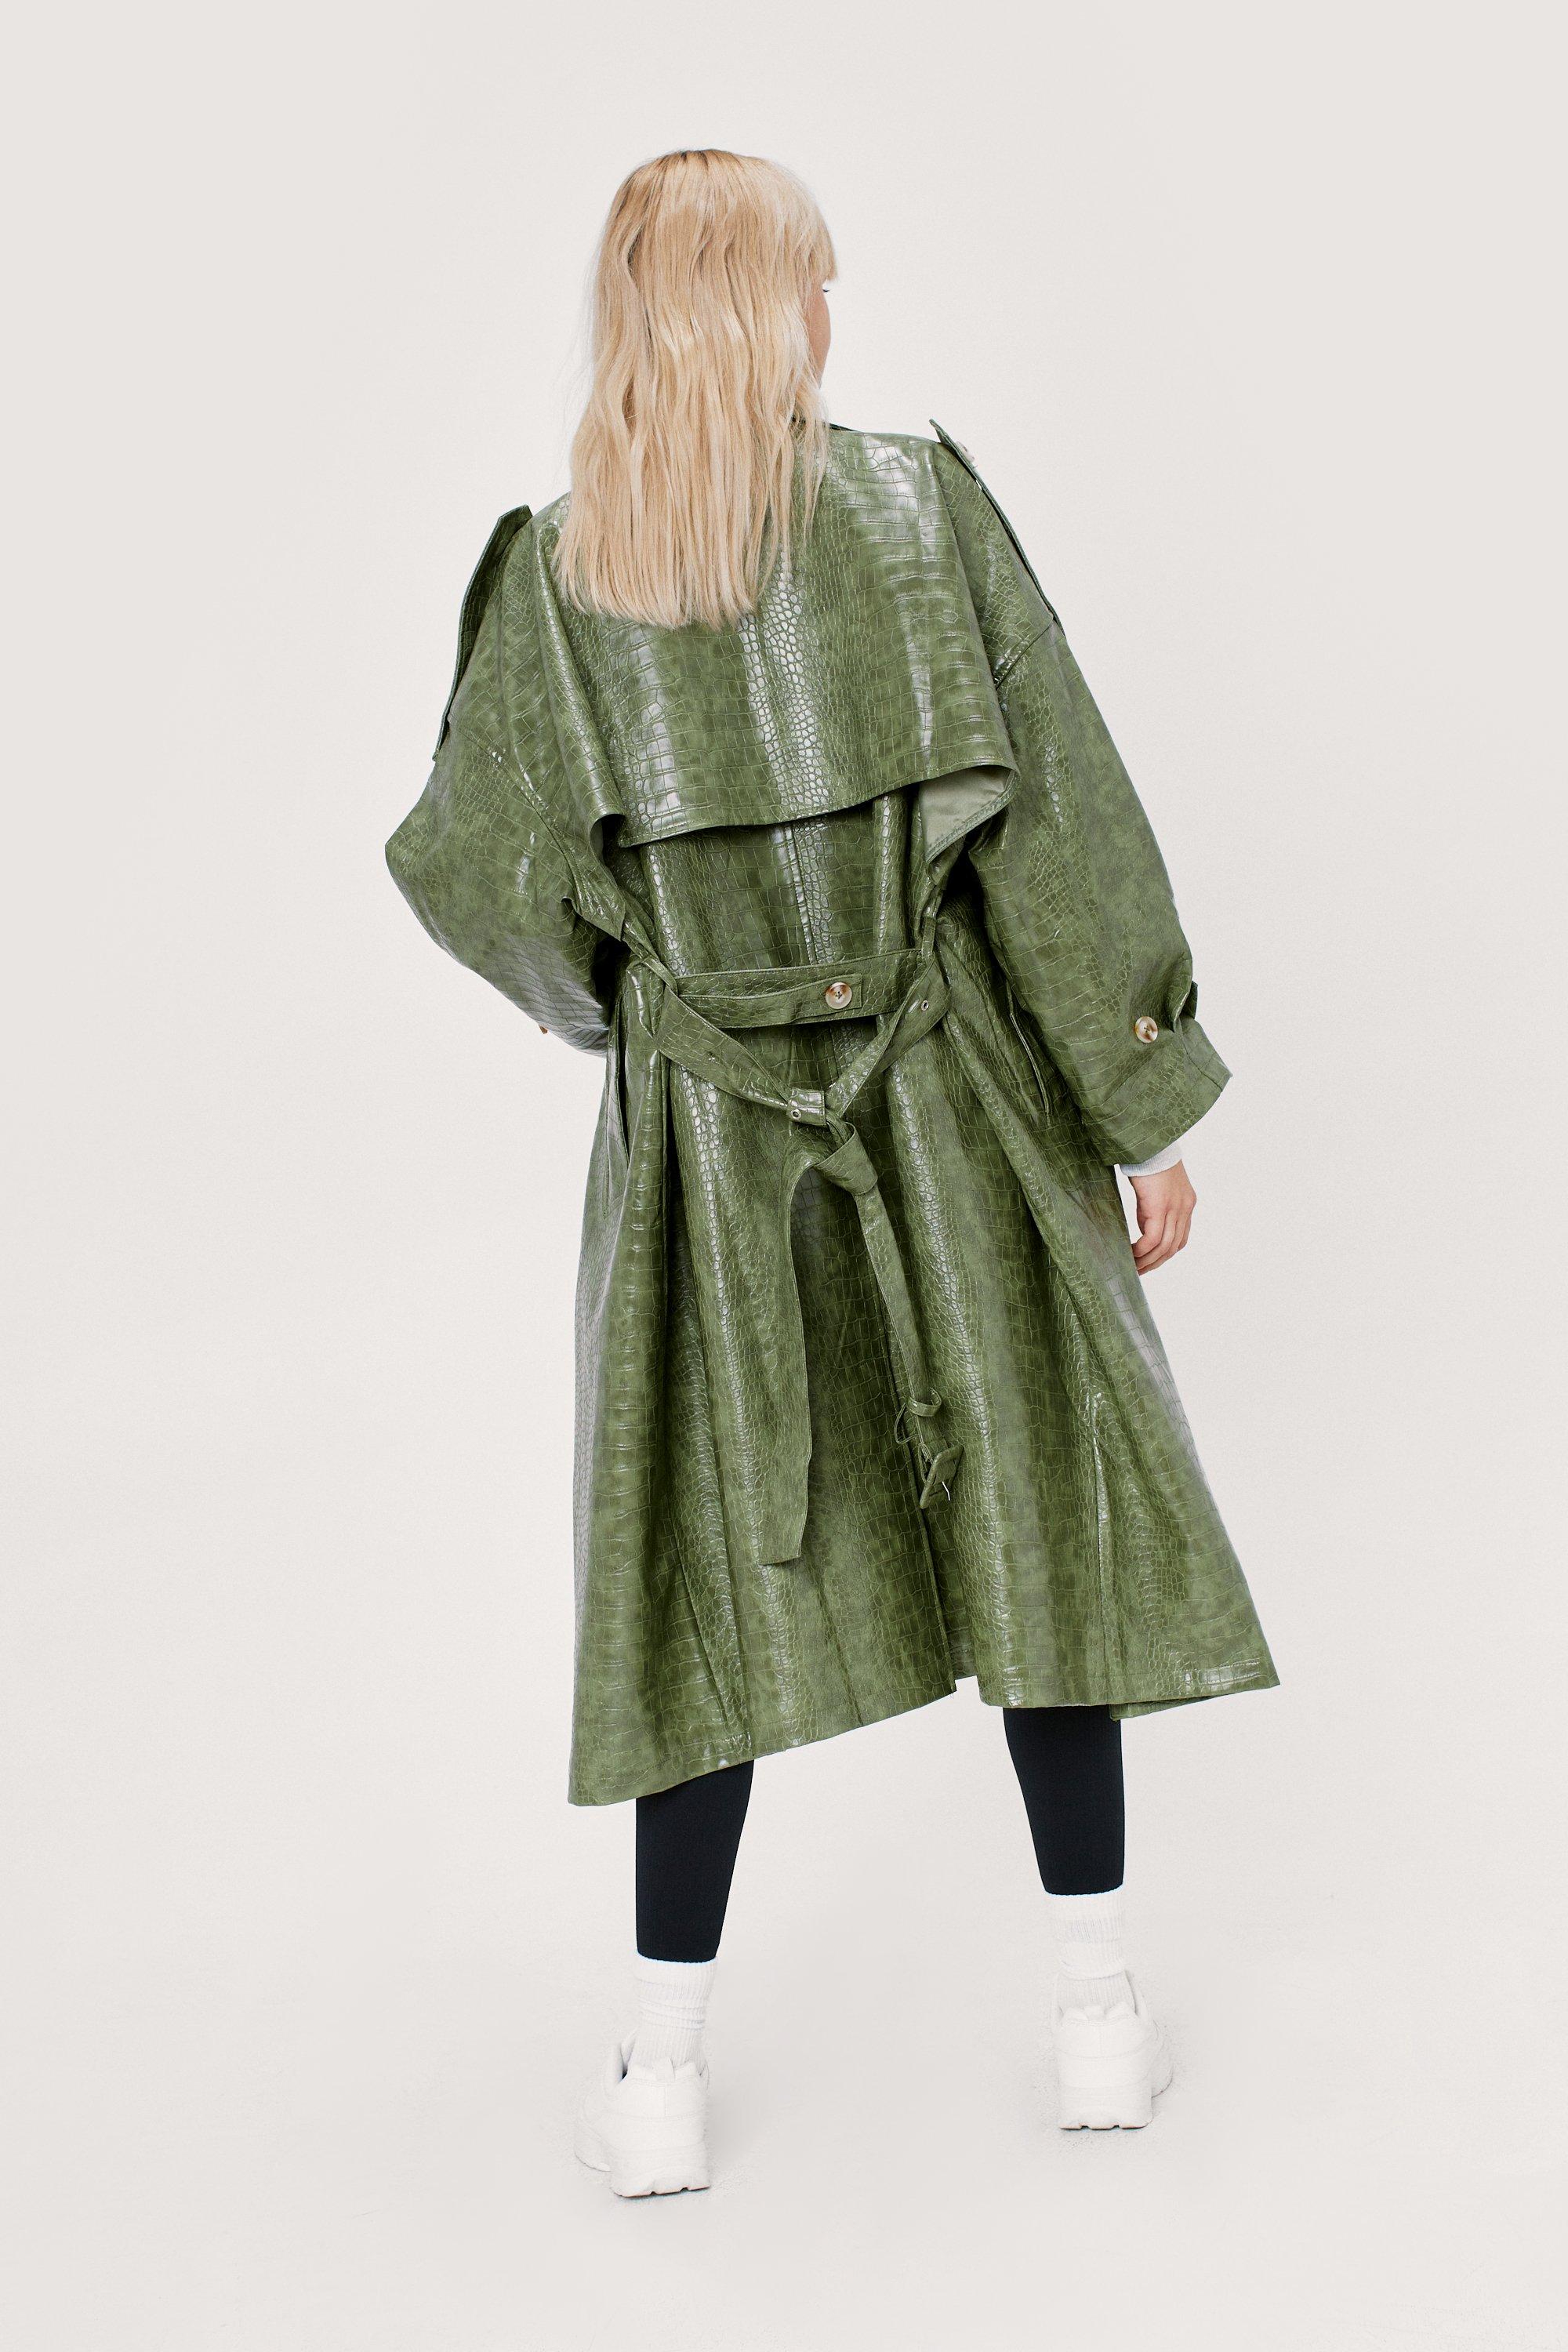 Alligator / Crocodile Faux Leather Trench Coat Unisex Stylish and Fashion  Design